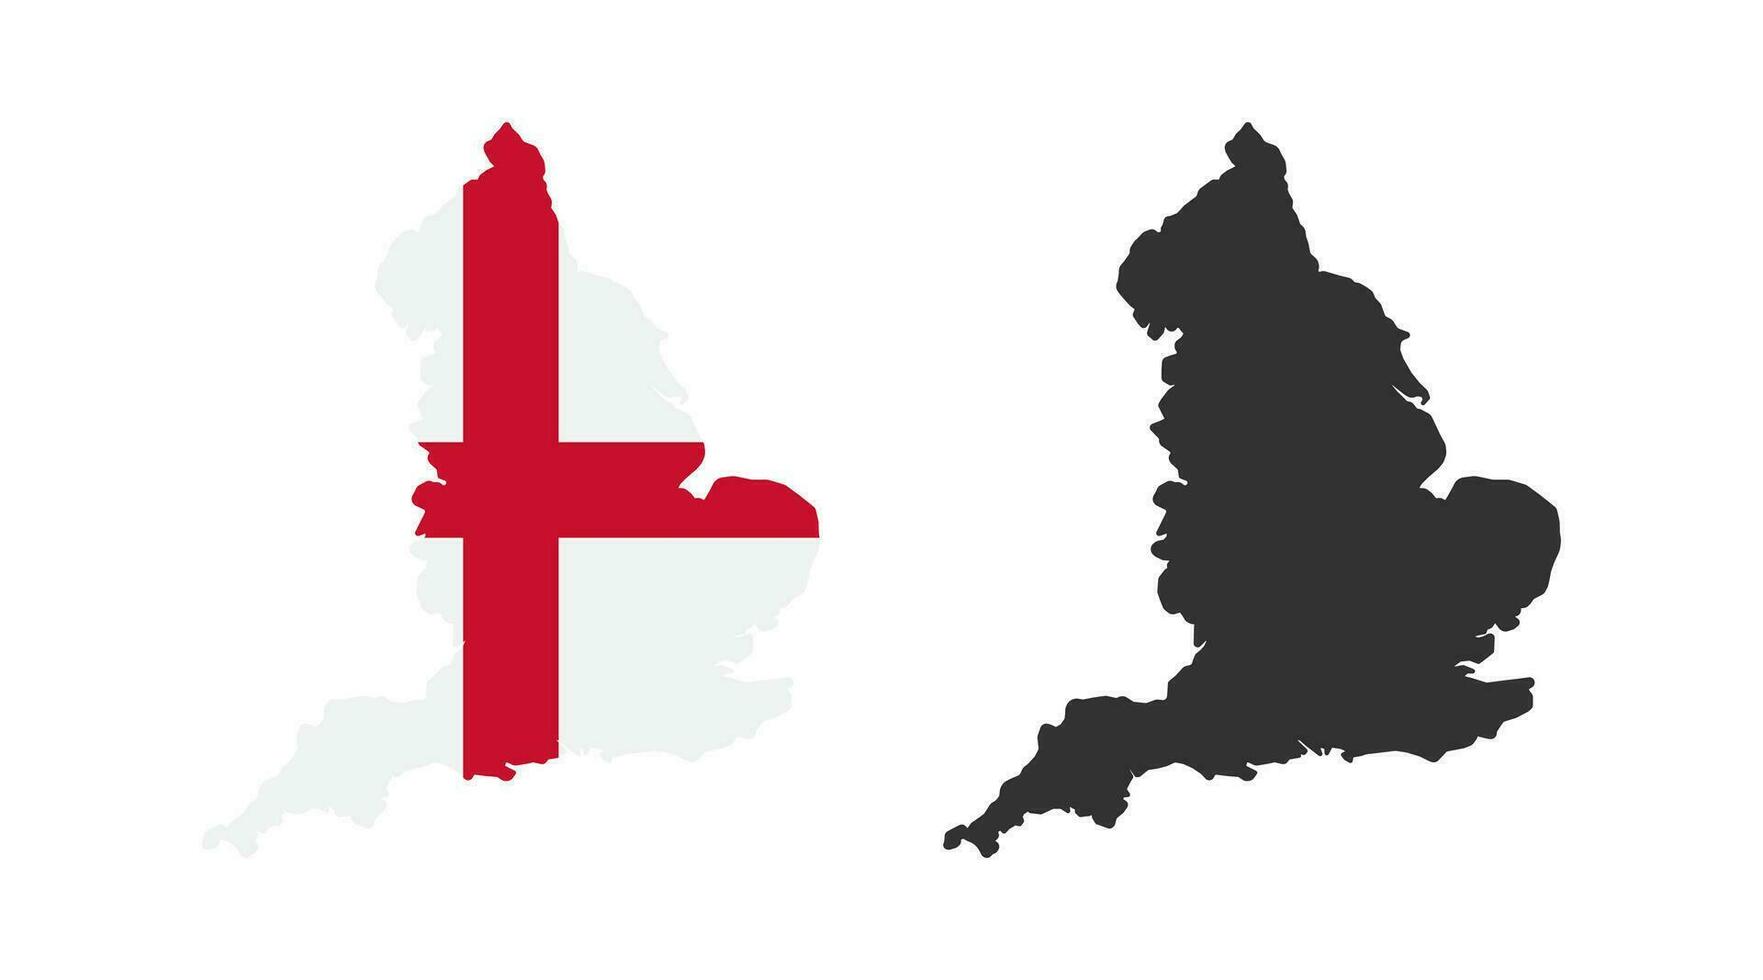 England Karta ikon. engelsk Land gräns symbol. Storbritannien geografi tecken. Europa symboler. brittiskt rike ikoner. svart Färg. vektor tecken.